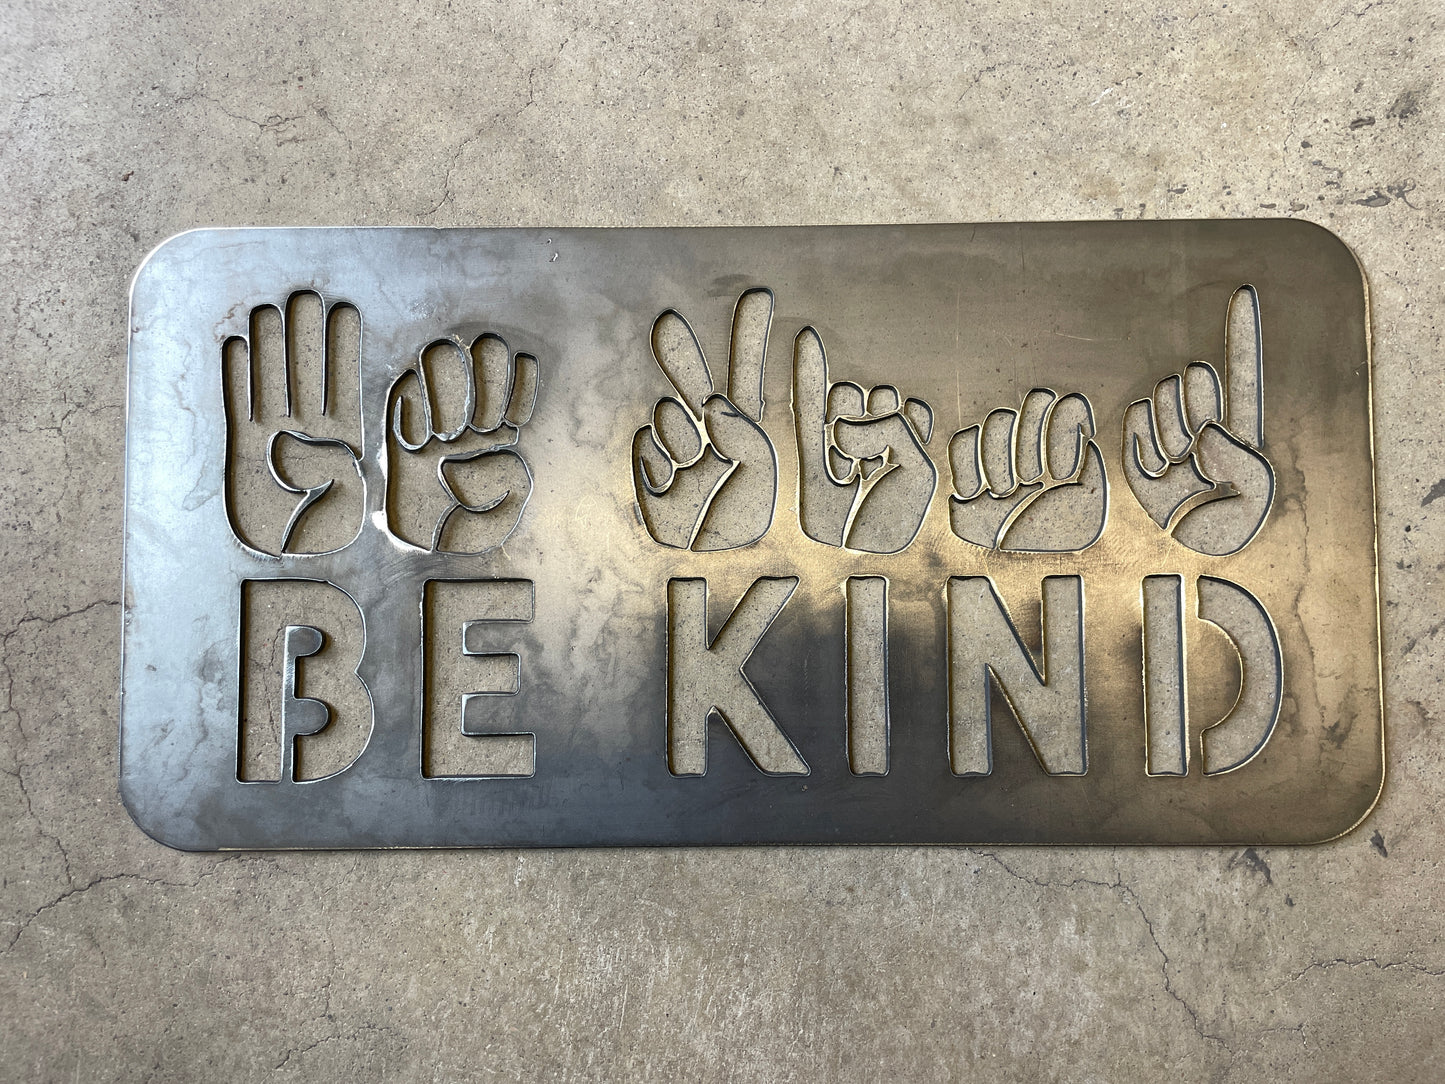 ASL "Be Kind" Sign